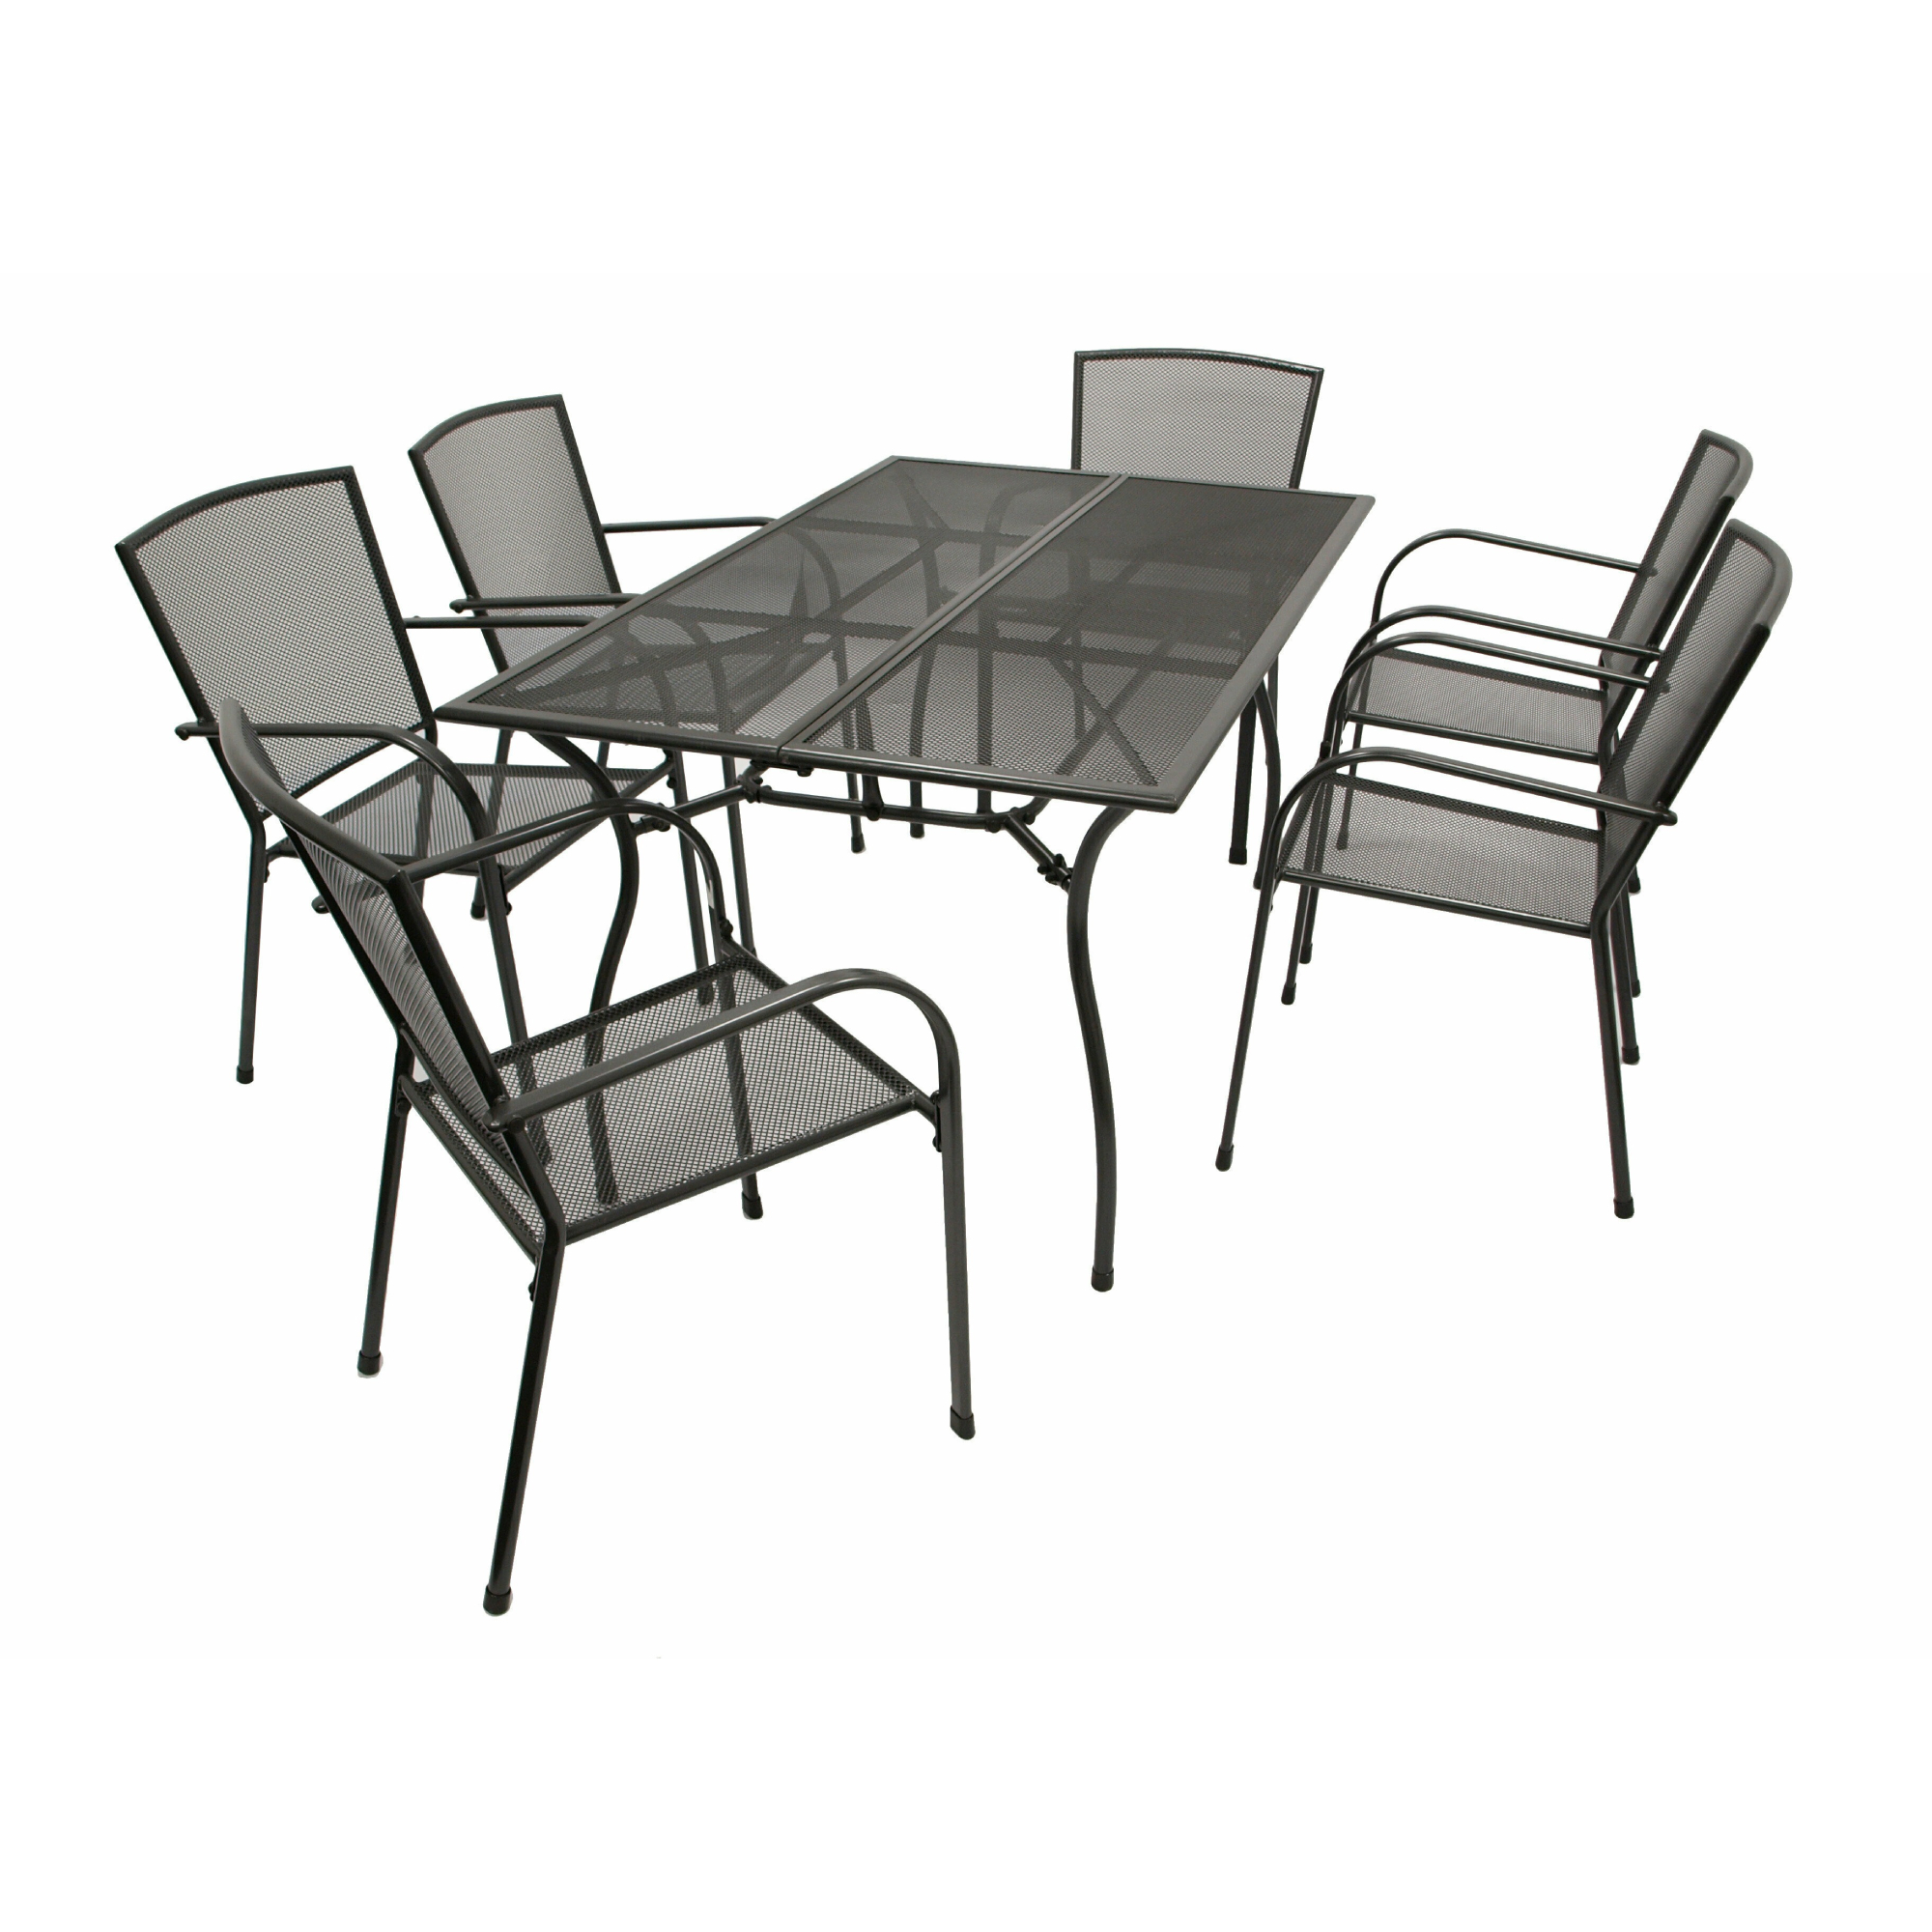 Комплект мебели Degamo Классика 7 предметов набор садовой мебели для обеда адриан gs008 искусственный ротанг бежевый стол кресла